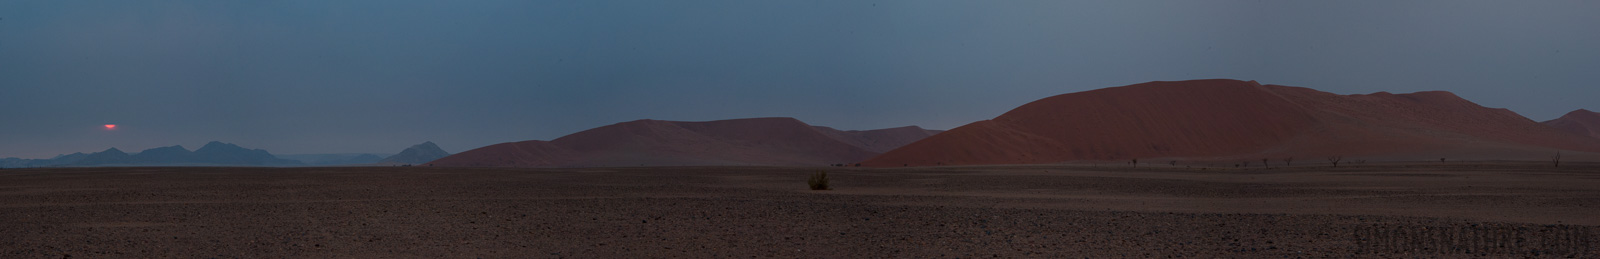 Namib-Naukluft National Park [100 mm, 1/80 sec at f / 11, ISO 1250]